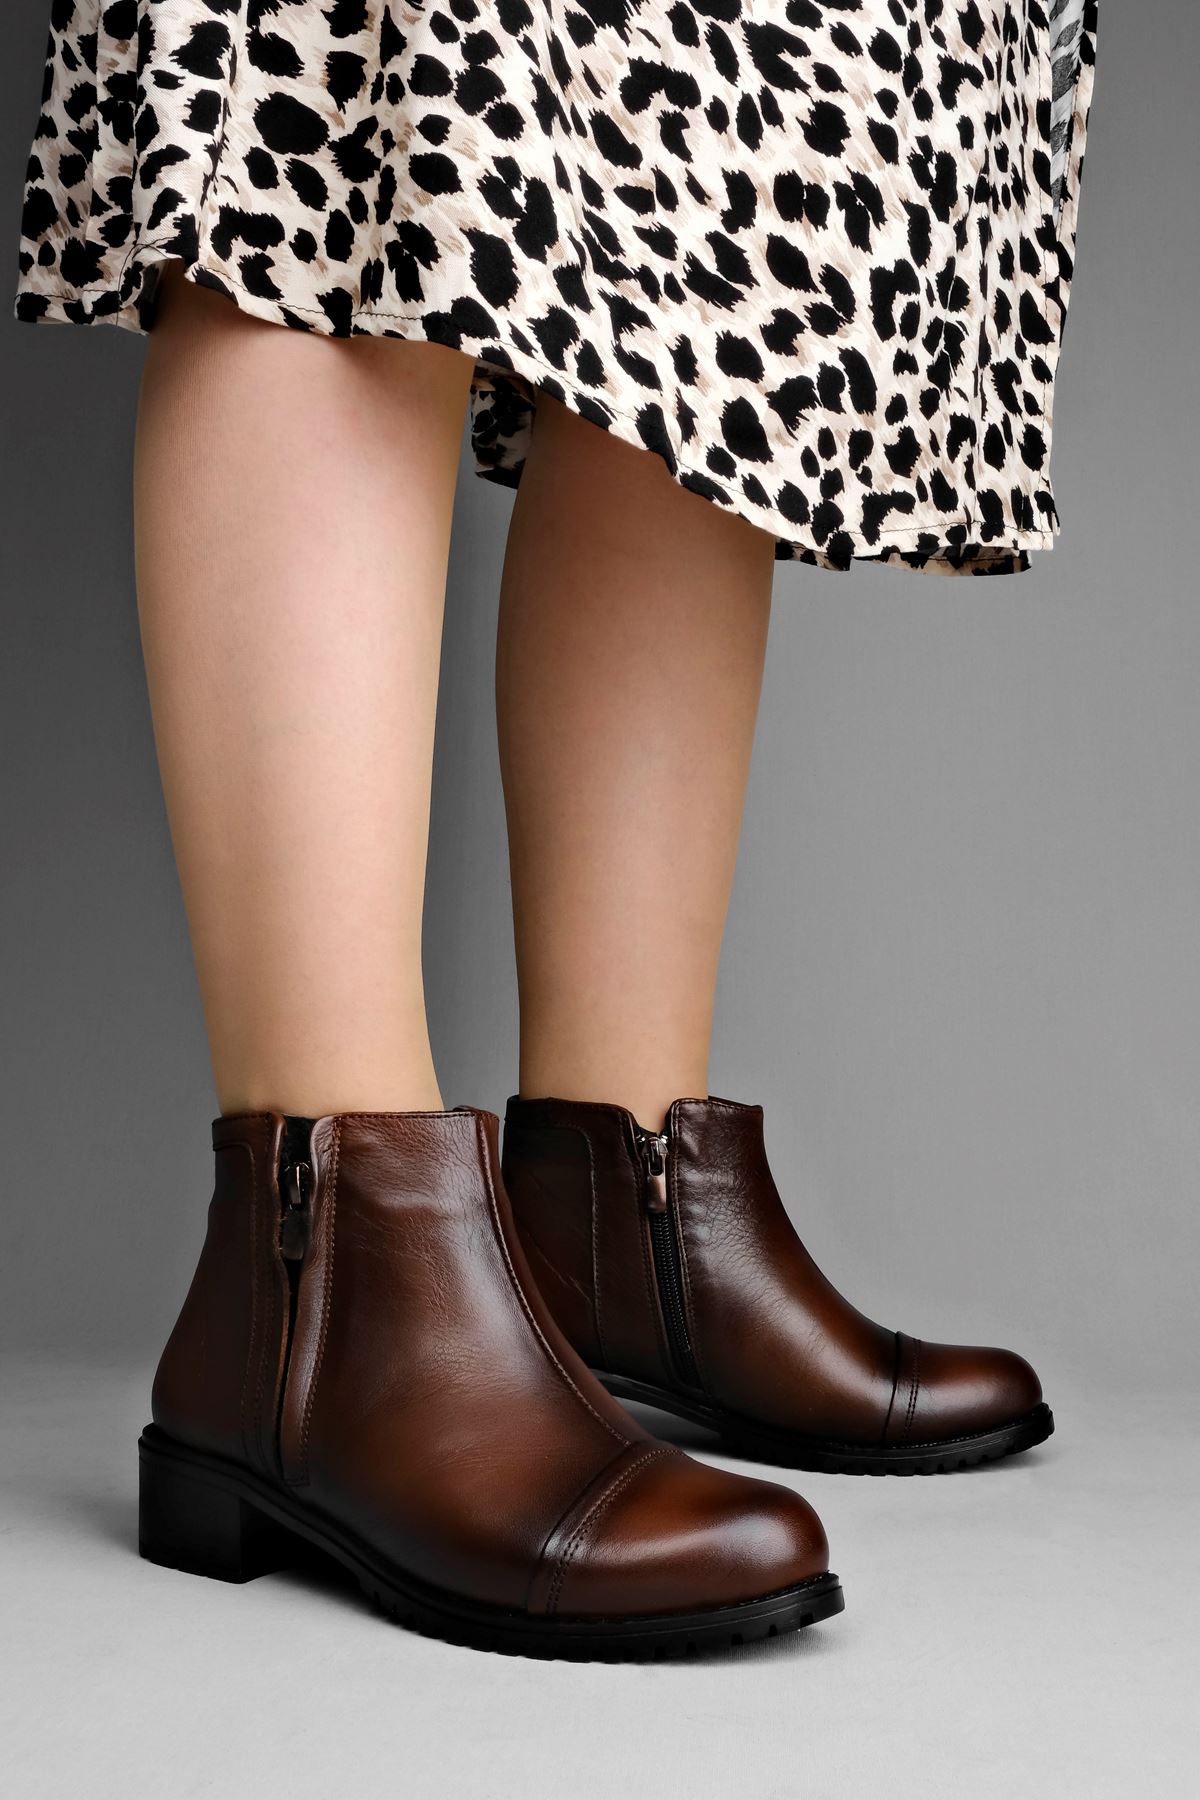 Cool Kadın Hakiki Deri Ayakkabı Dikiş Detaylı Kadın Bot Postal-Kahverengi